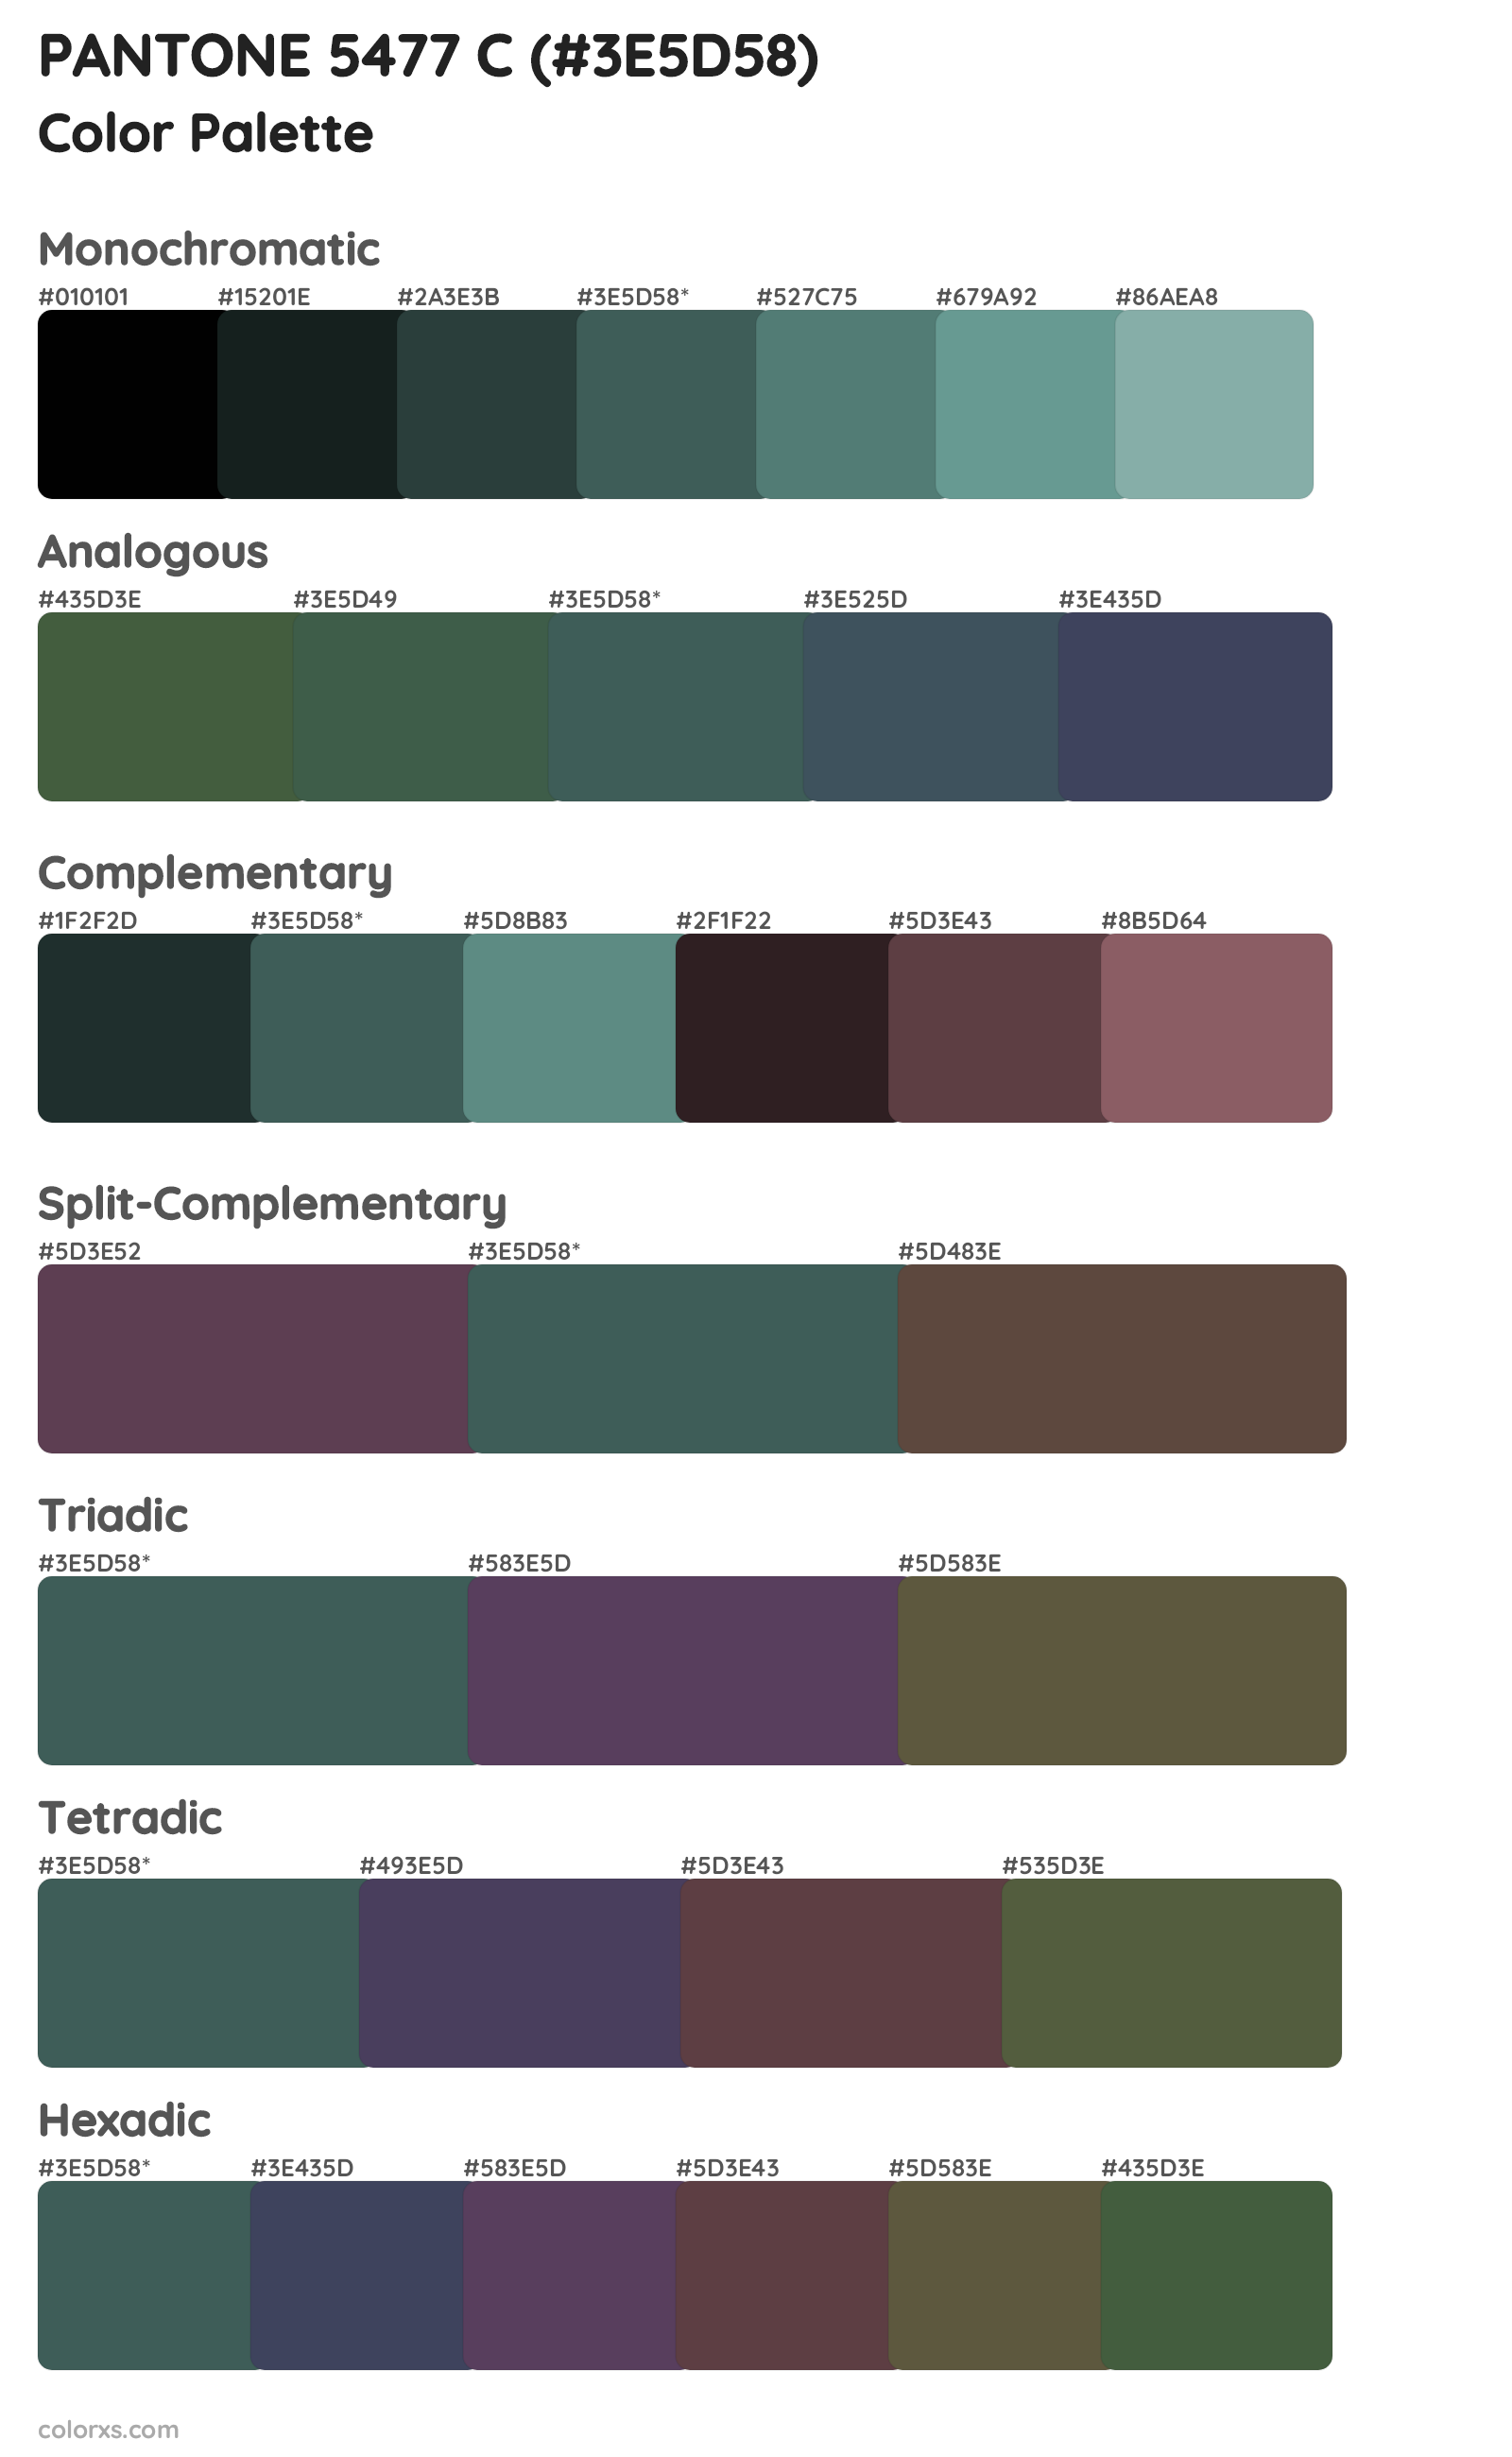 PANTONE 5477 C Color Scheme Palettes